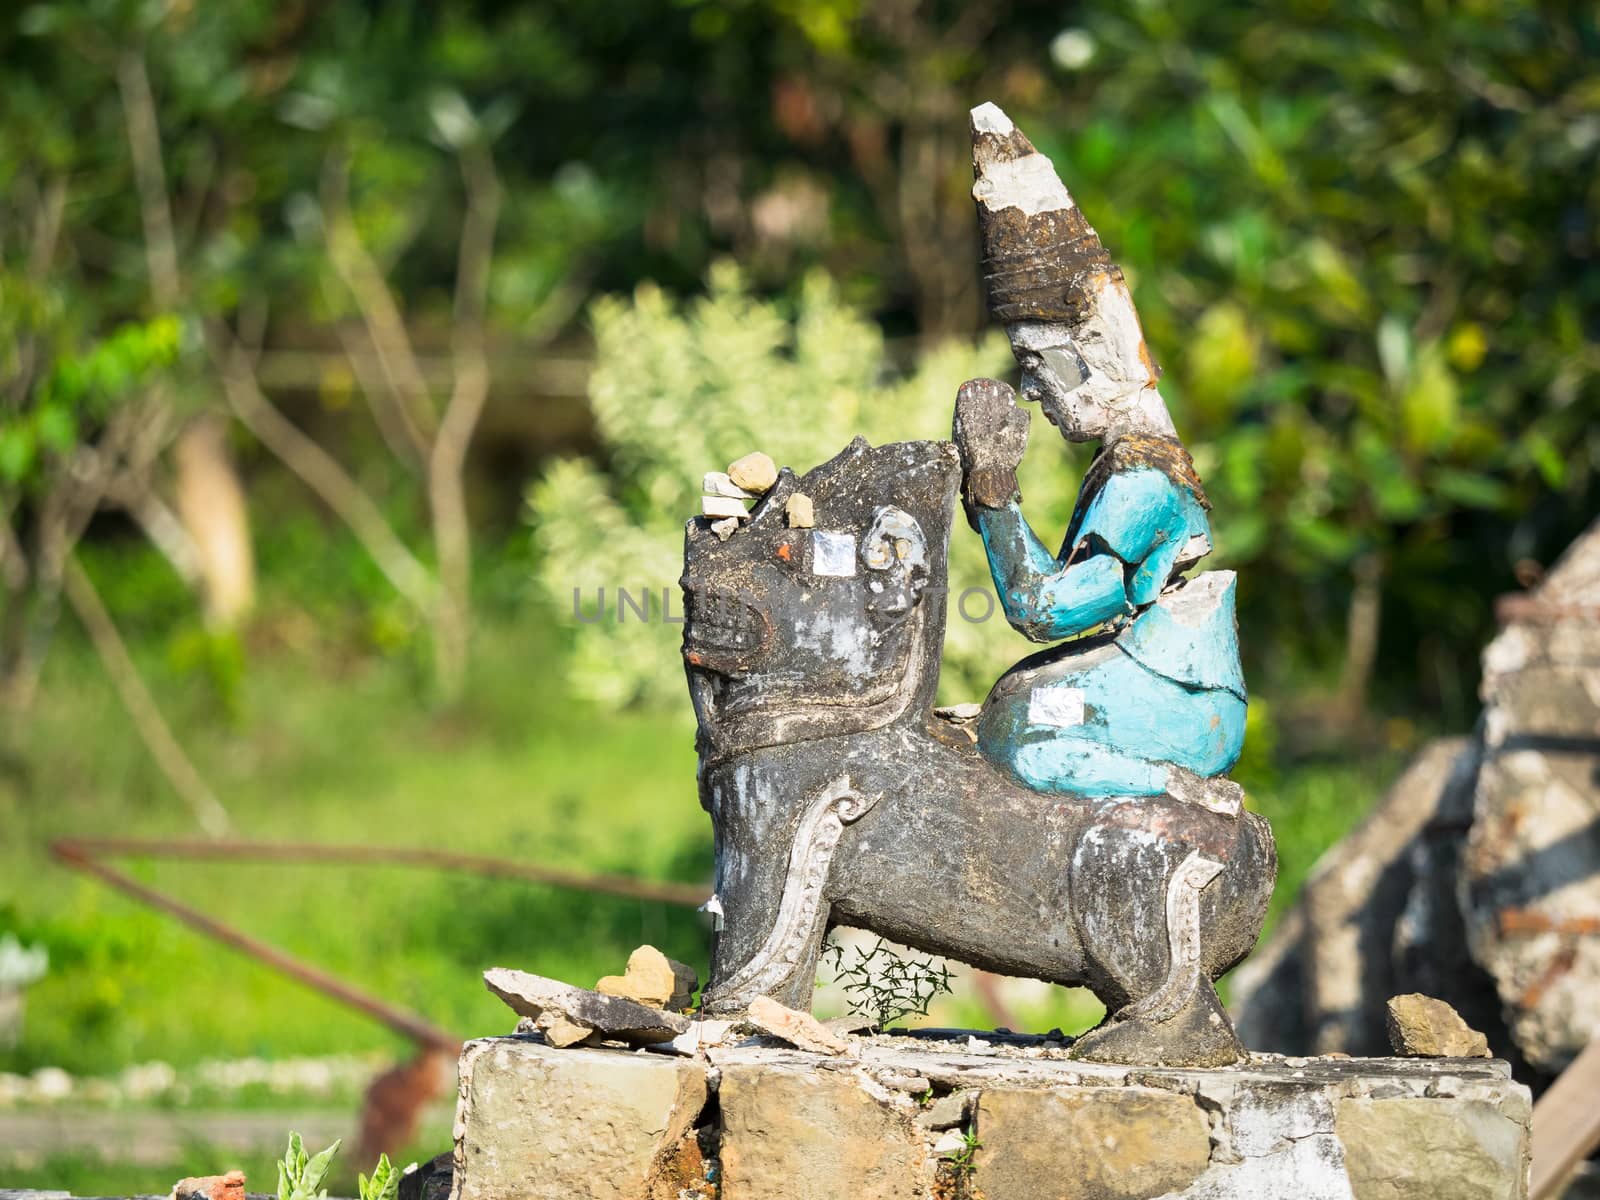 Broken, religious figurine in Mrauk U, Myanmar by epixx